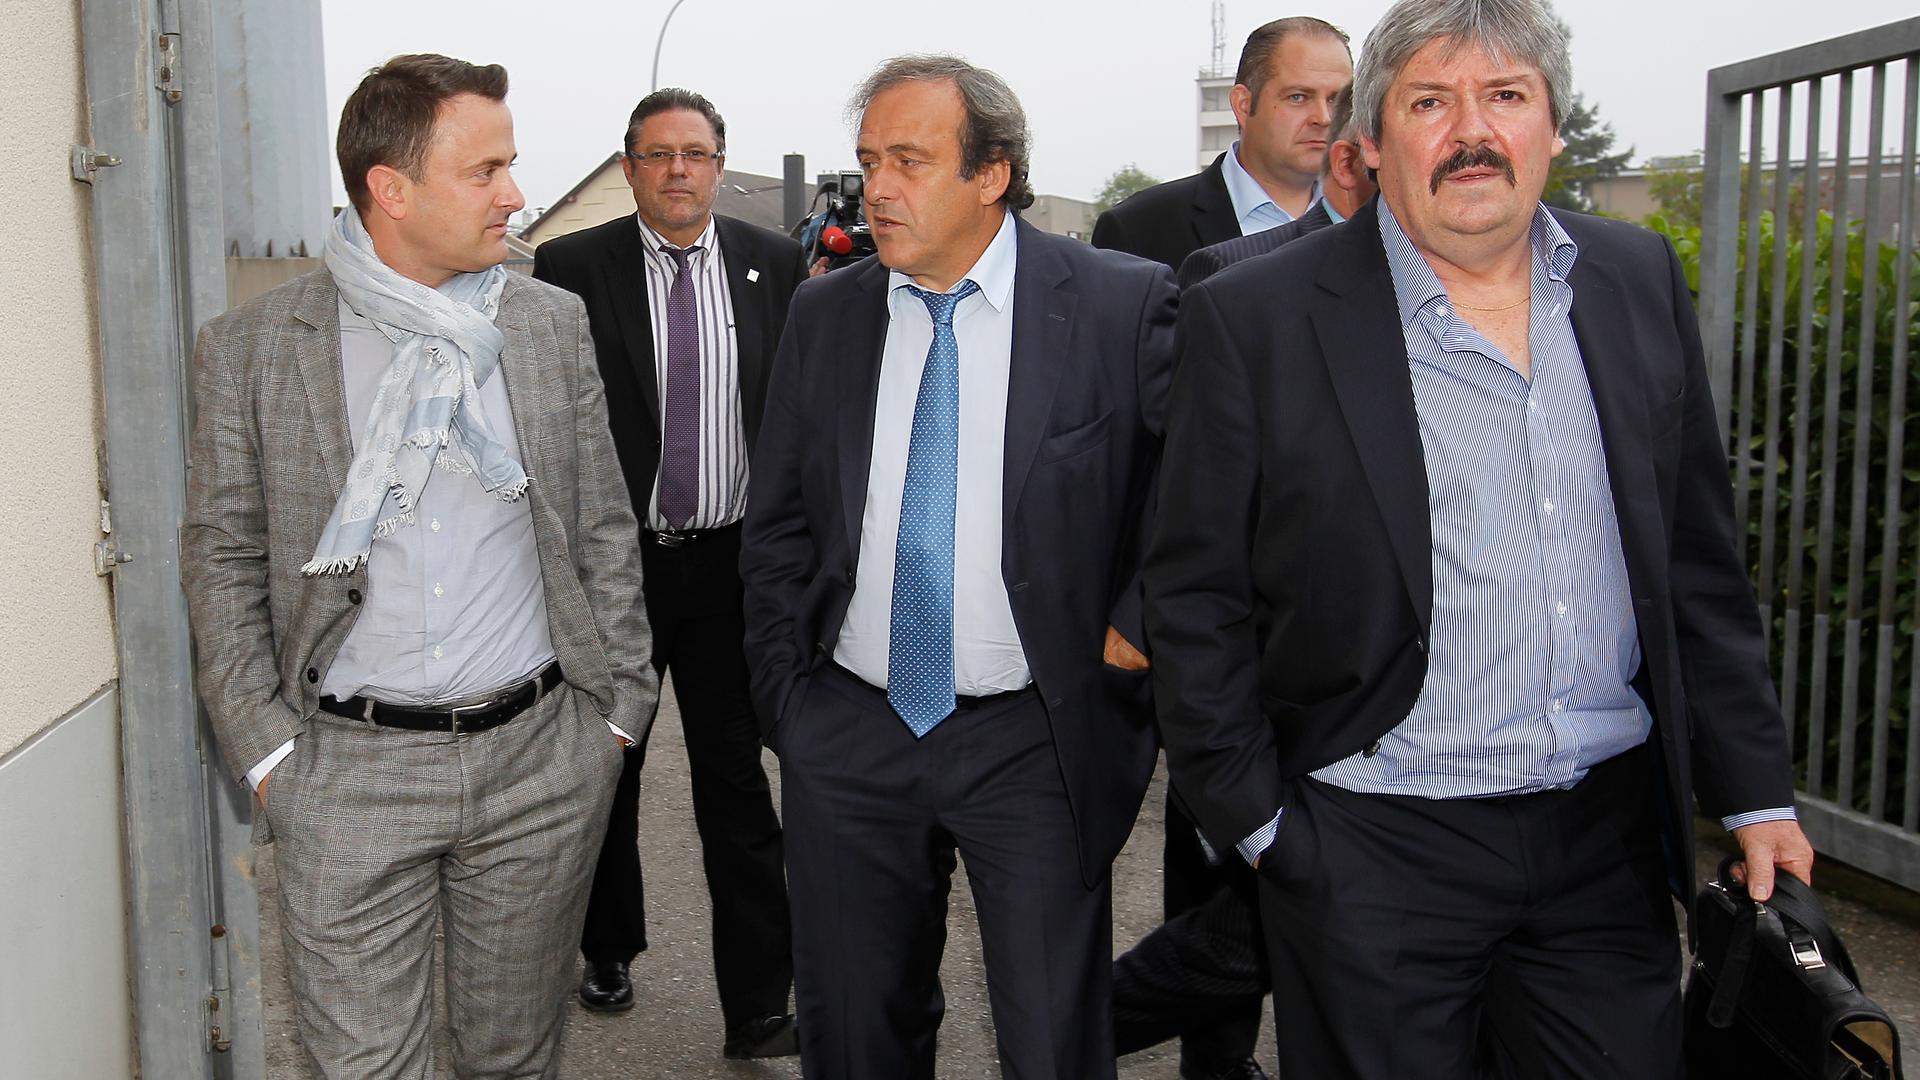 La venue de Michel Platini, alors président de l'UEFA, va s'avérer décisive pour faire avancer le projet.